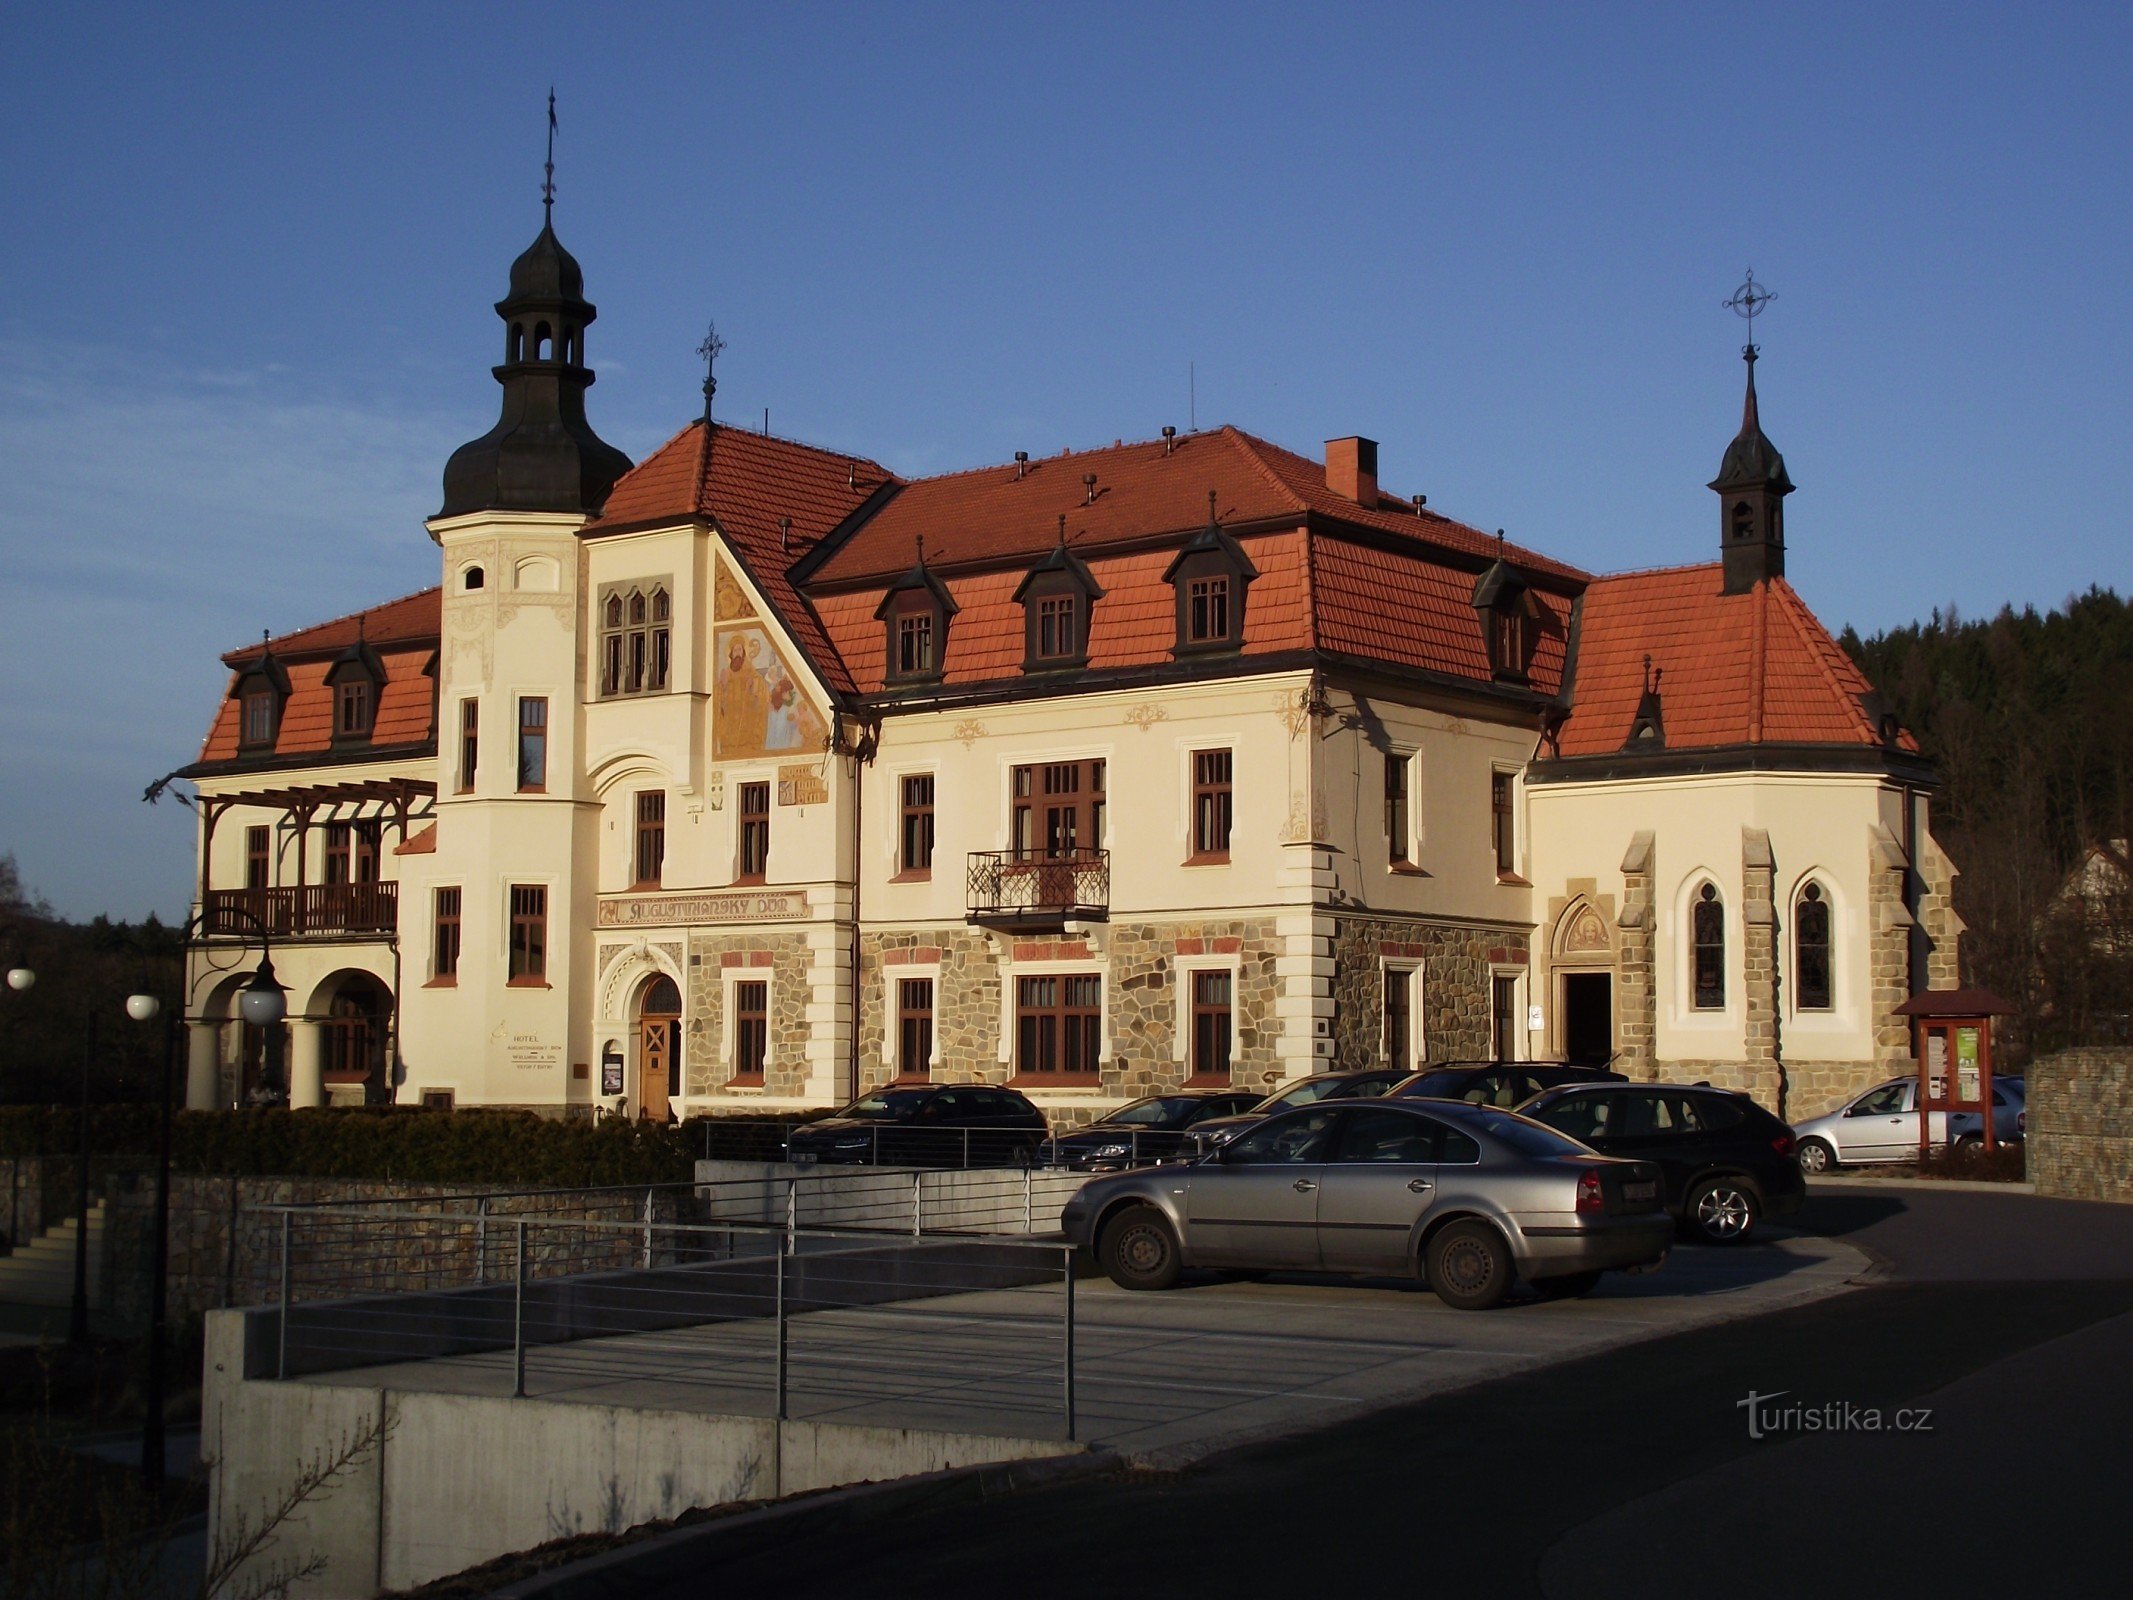 Luhačovice - casa agustina